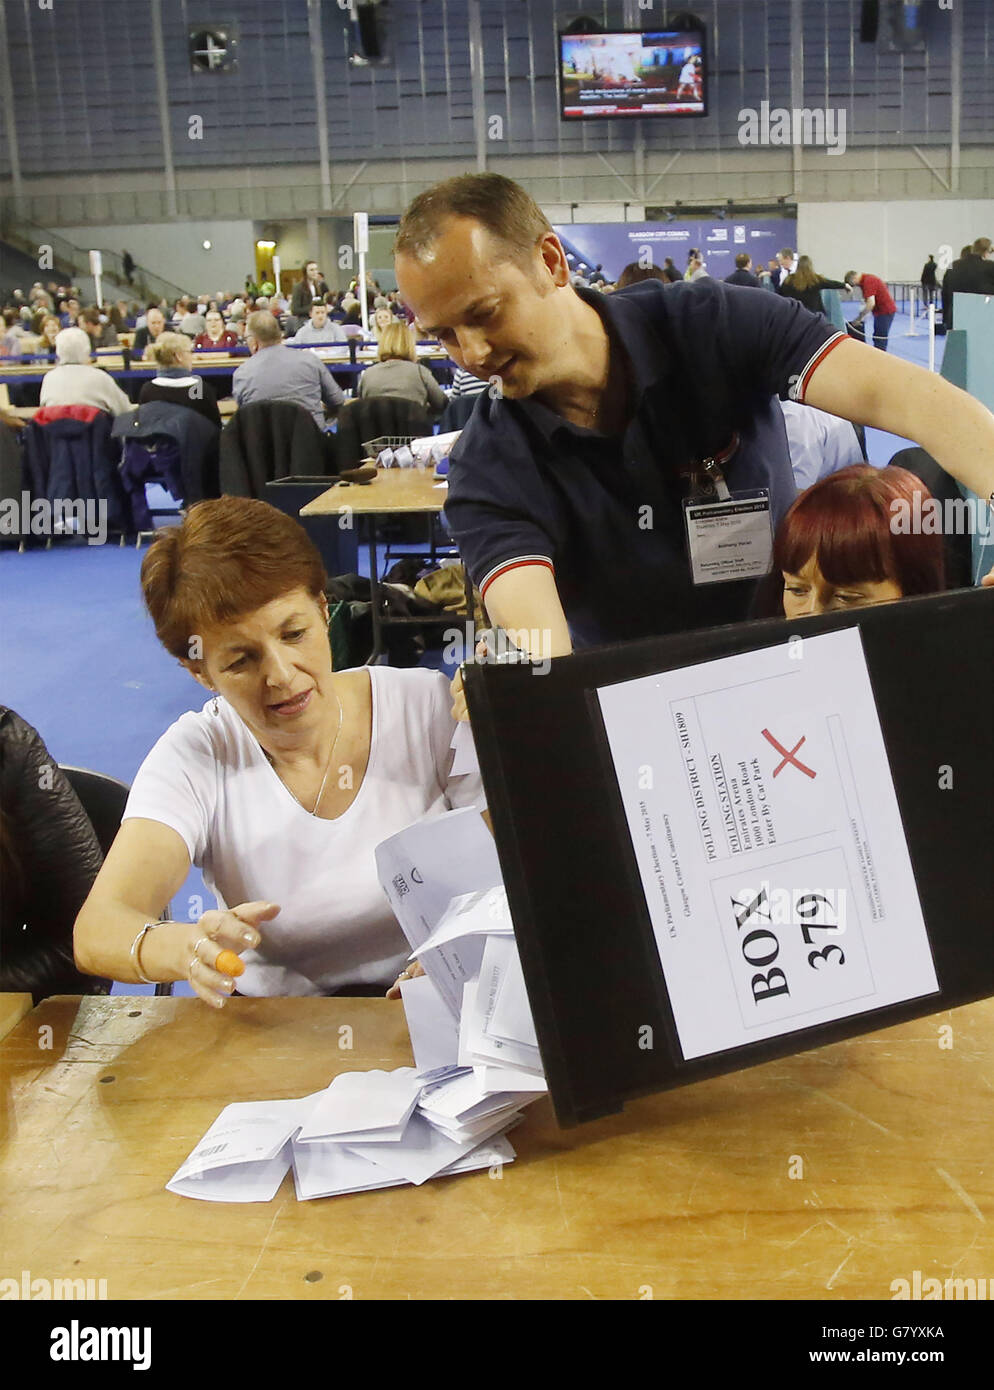 Los primeros votos llegan al escrutinio de las elecciones generales para los distritos electorales de Glasgow en el Emirates Arena de Glasgow. Foto de stock